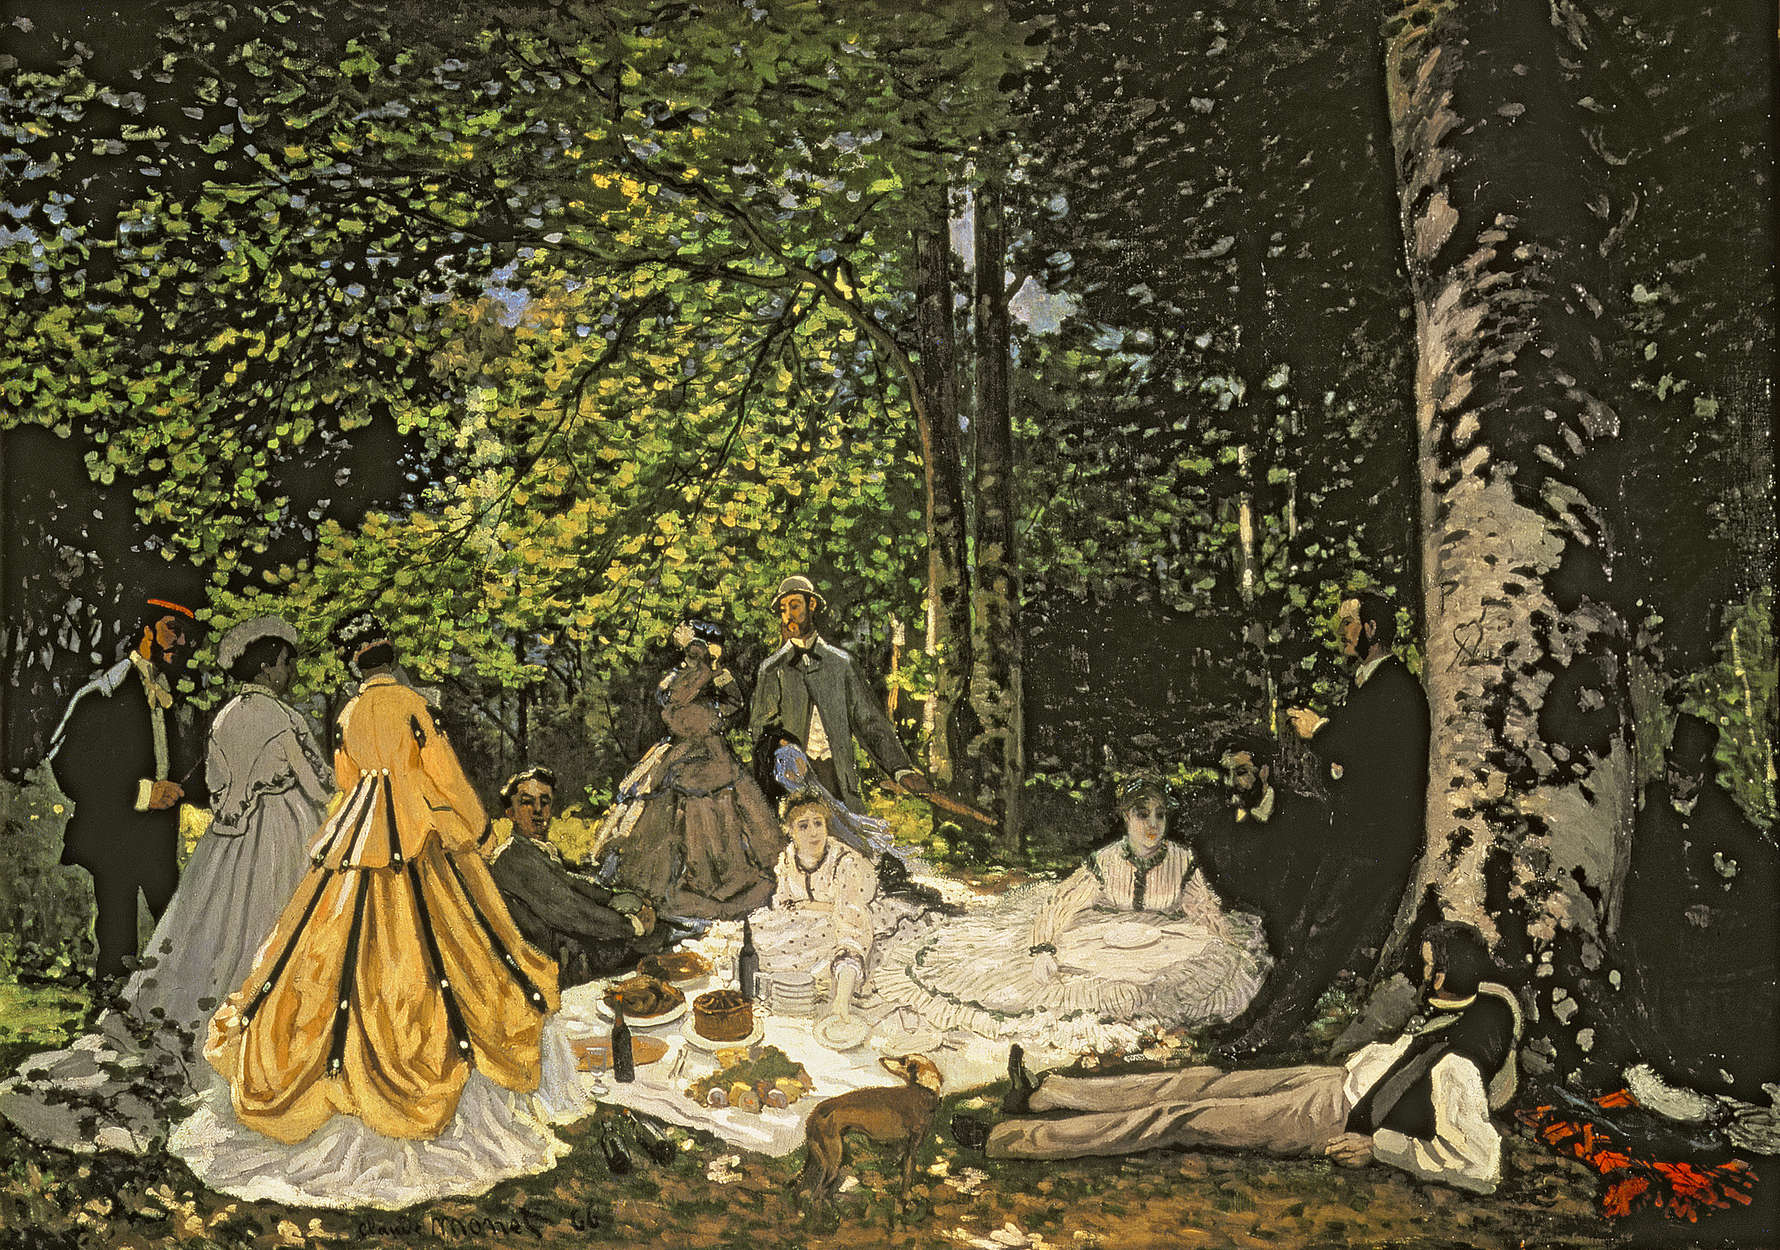             Muurschildering "Ontbijt in het groen" van Claude Monet
        